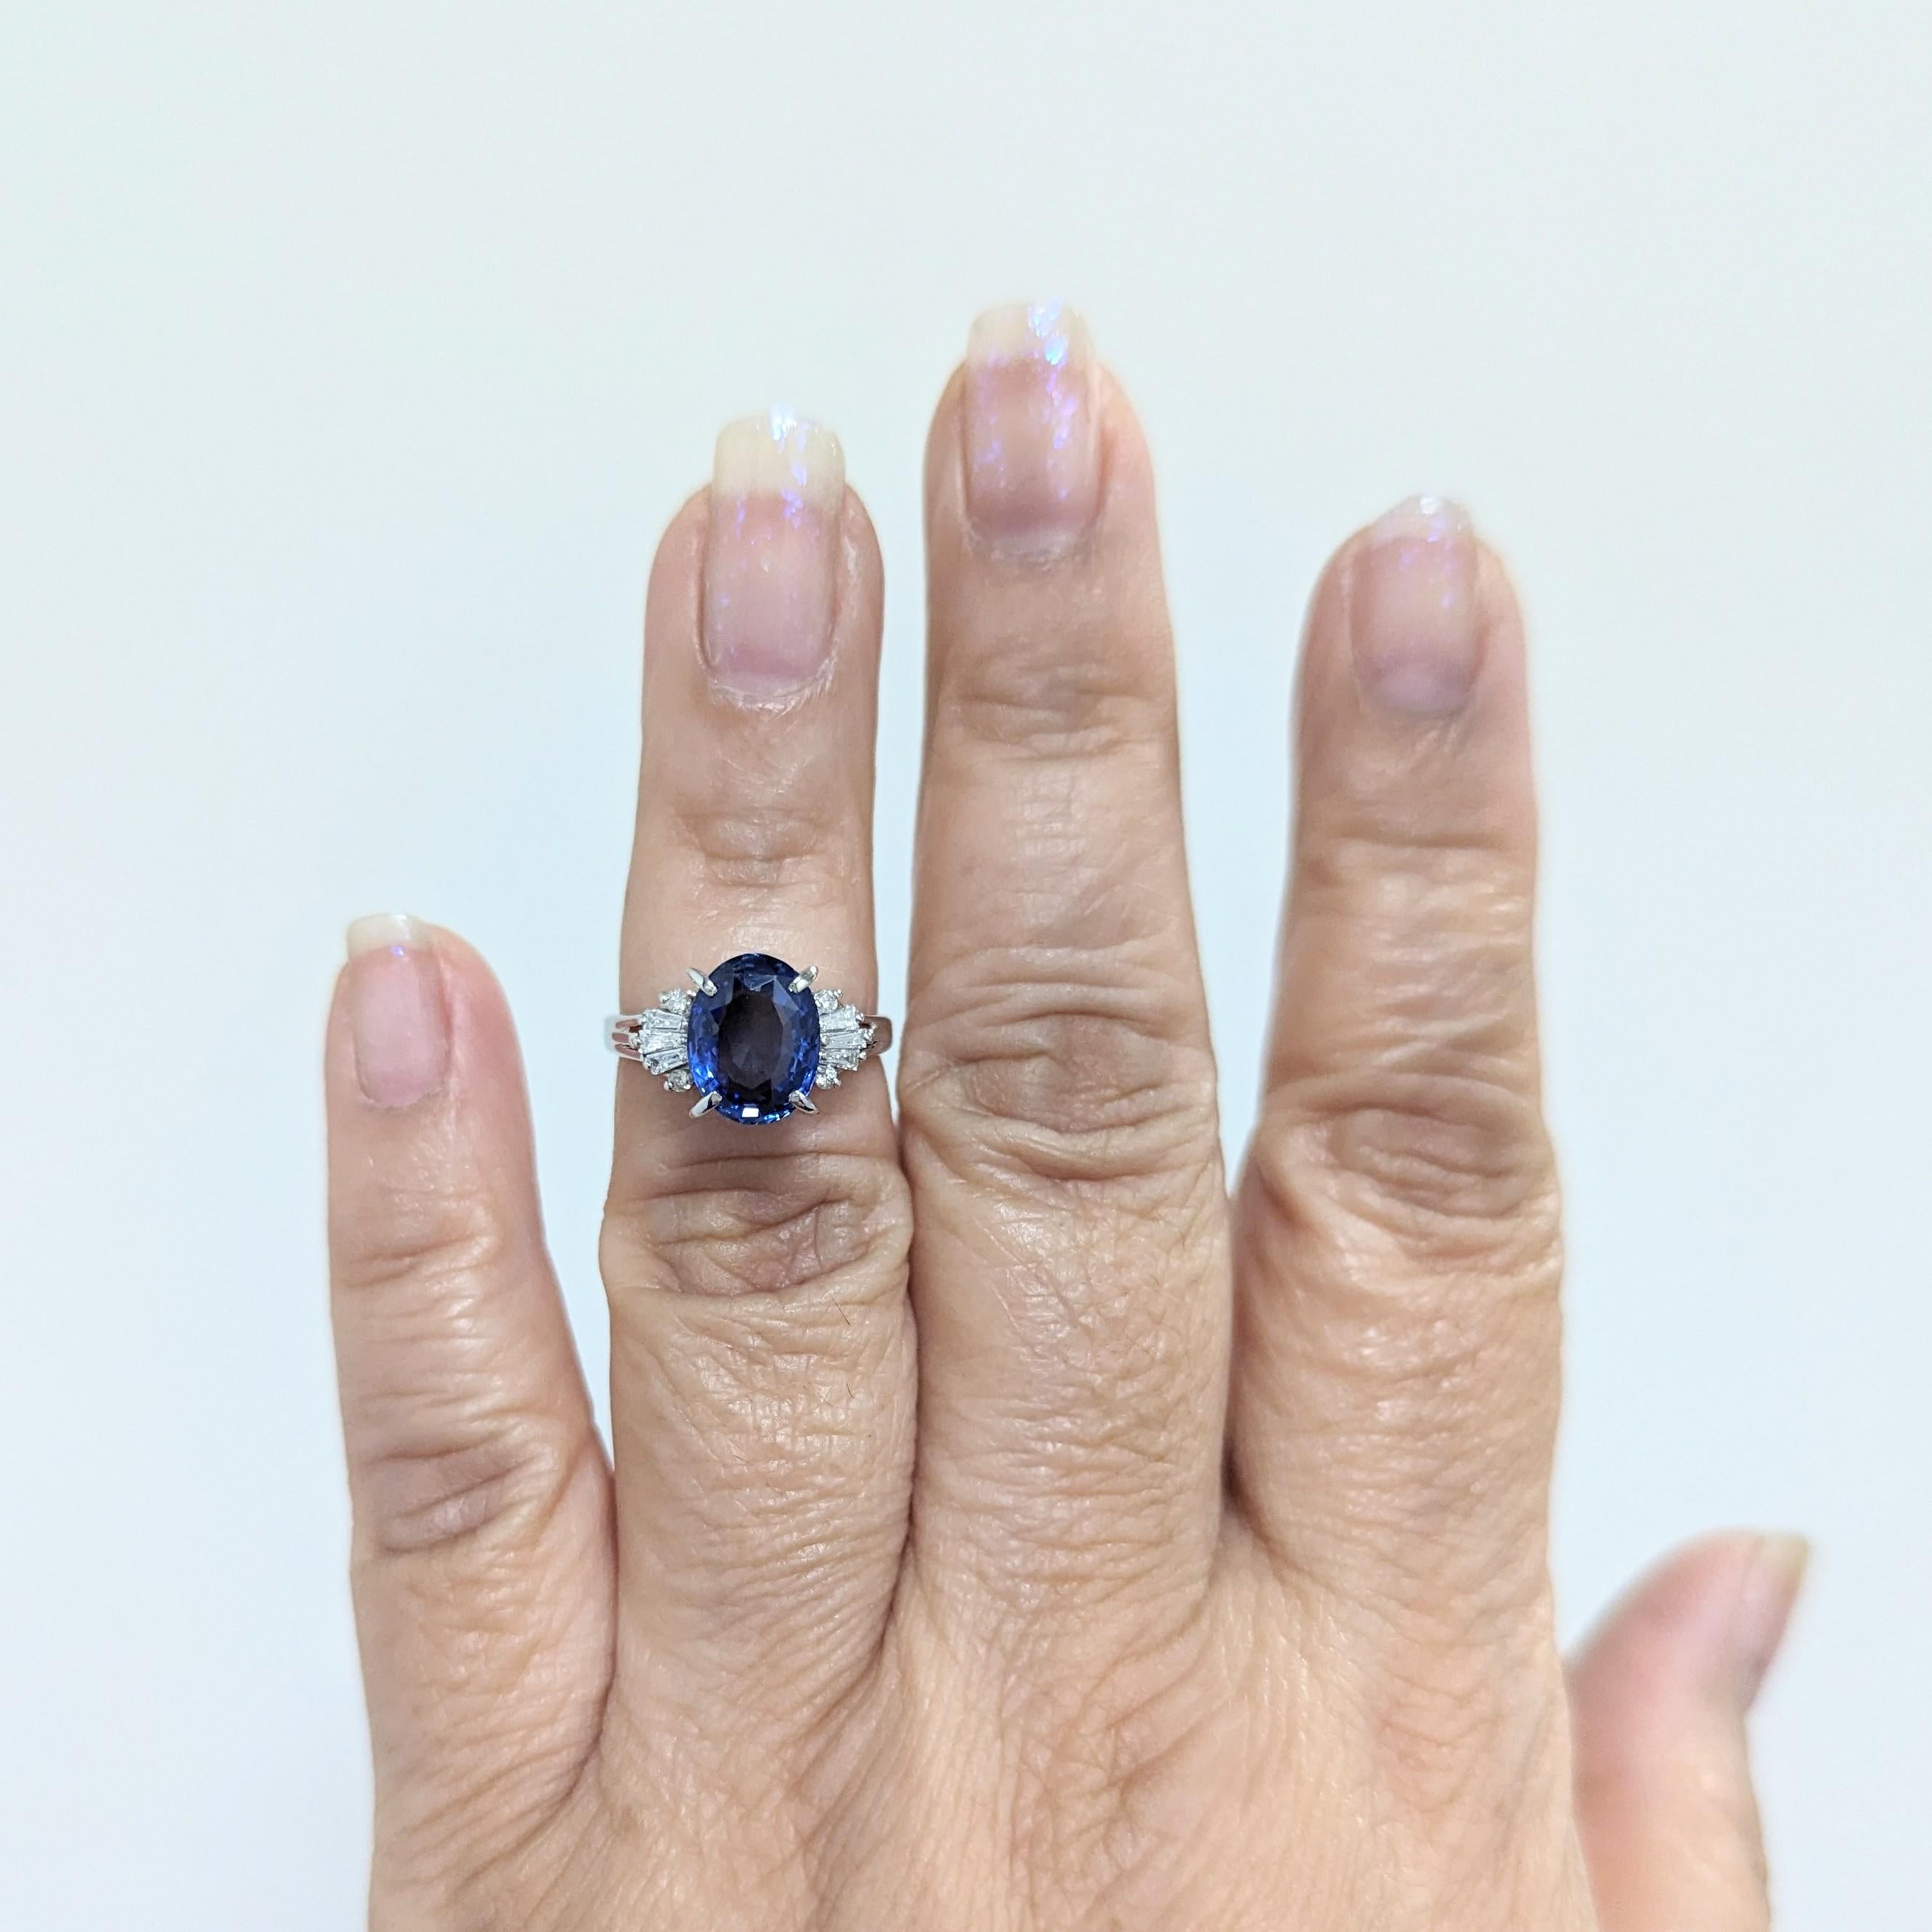 Magnifique saphir bleu ovale de 3,66 ct. avec des baguettes de diamants blancs de bonne qualité de 0,20 ct.  Fait à la main en platine.  Bague taille 6.5.